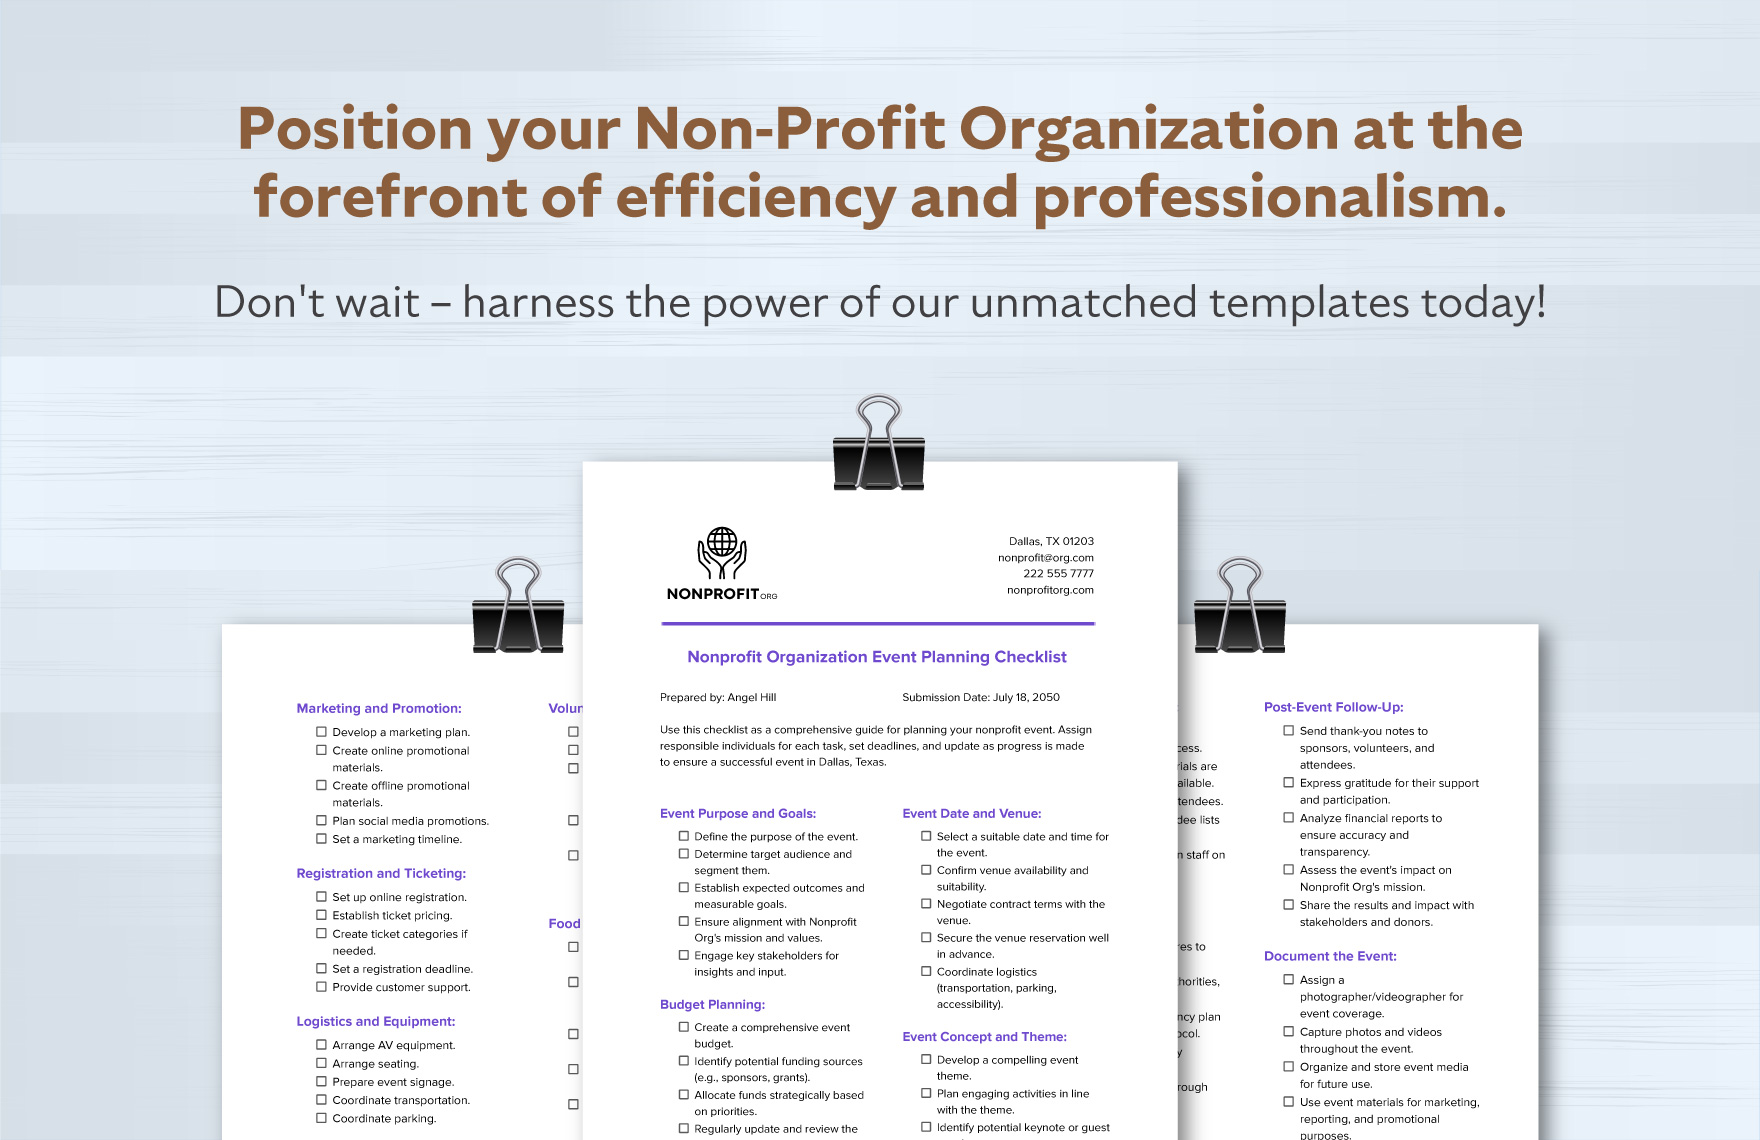 Nonprofit Organization Event Planning Checklist Template